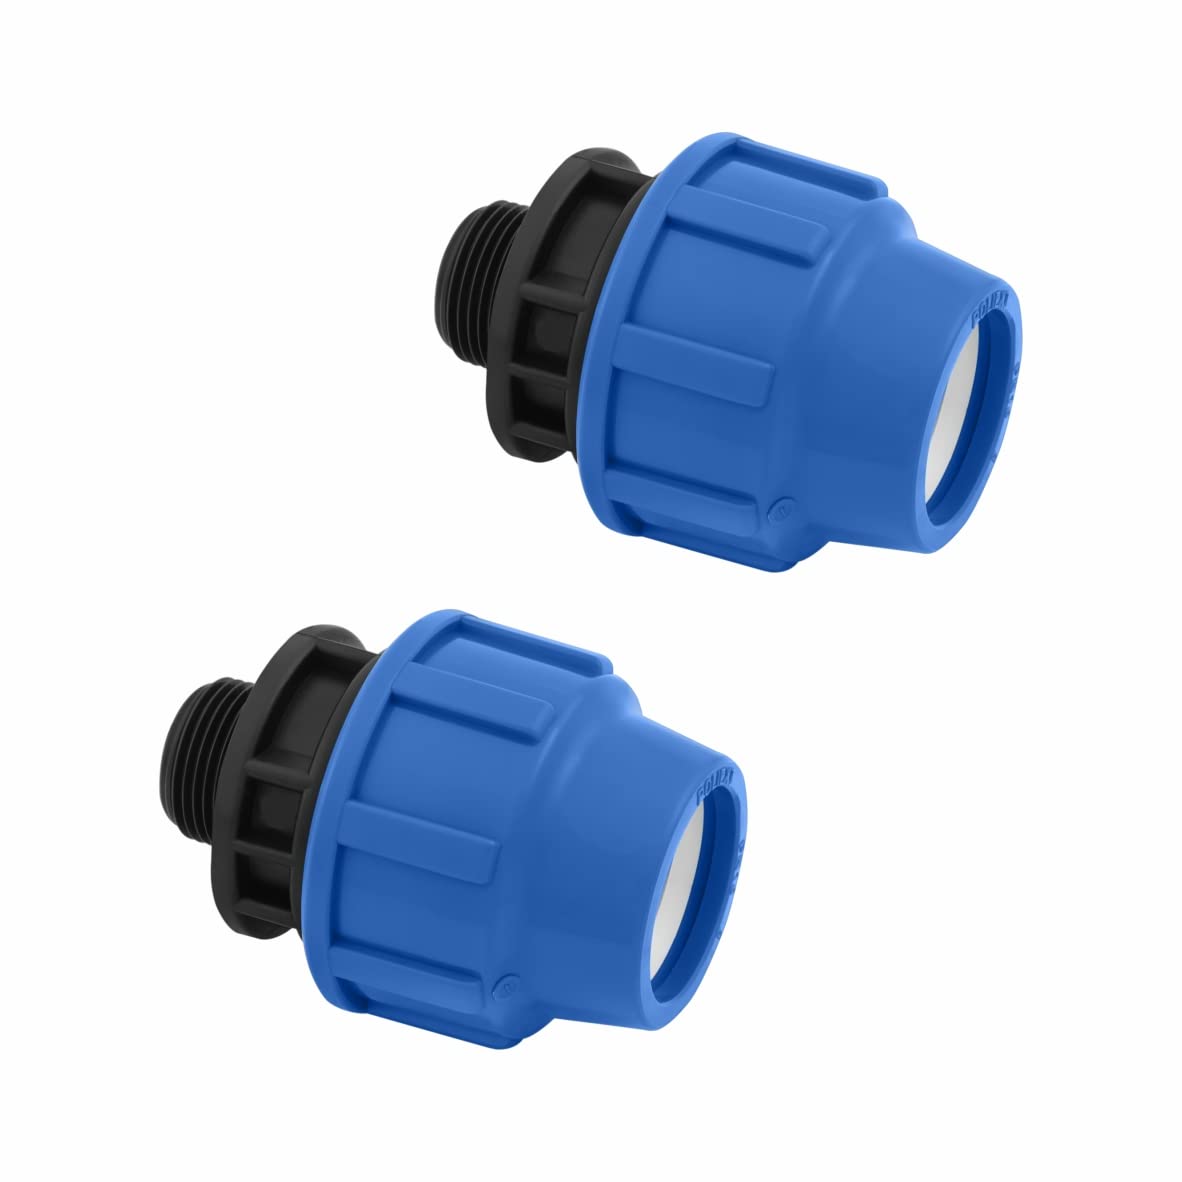 Classique Connecteur pour tuyaux MDPE PP 25mm x 1 mâle - Adaptateur pour tuyau d’eau PE de compression – Raccords de plomberie PN16 compatible avec tuyaux PE80 et PE100-2 pièces – SmartProduct rFafTCWx4 Vente chaude